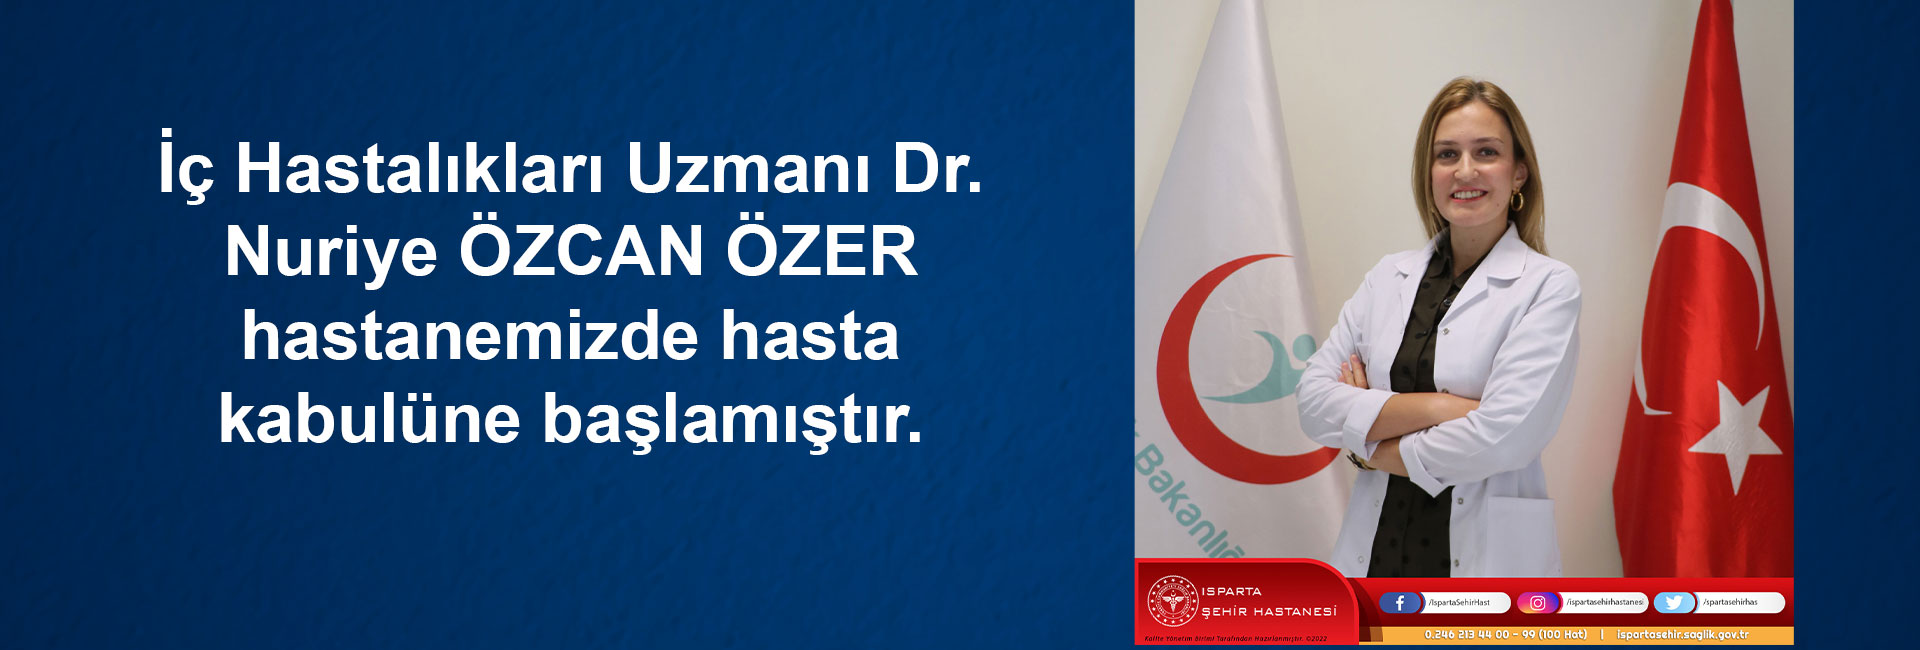 İç Hastalıkları Uzmanı Dr. Nuriye ÖZCAN ÖZER hastanemizde hasta kabulüne başlamıştır.